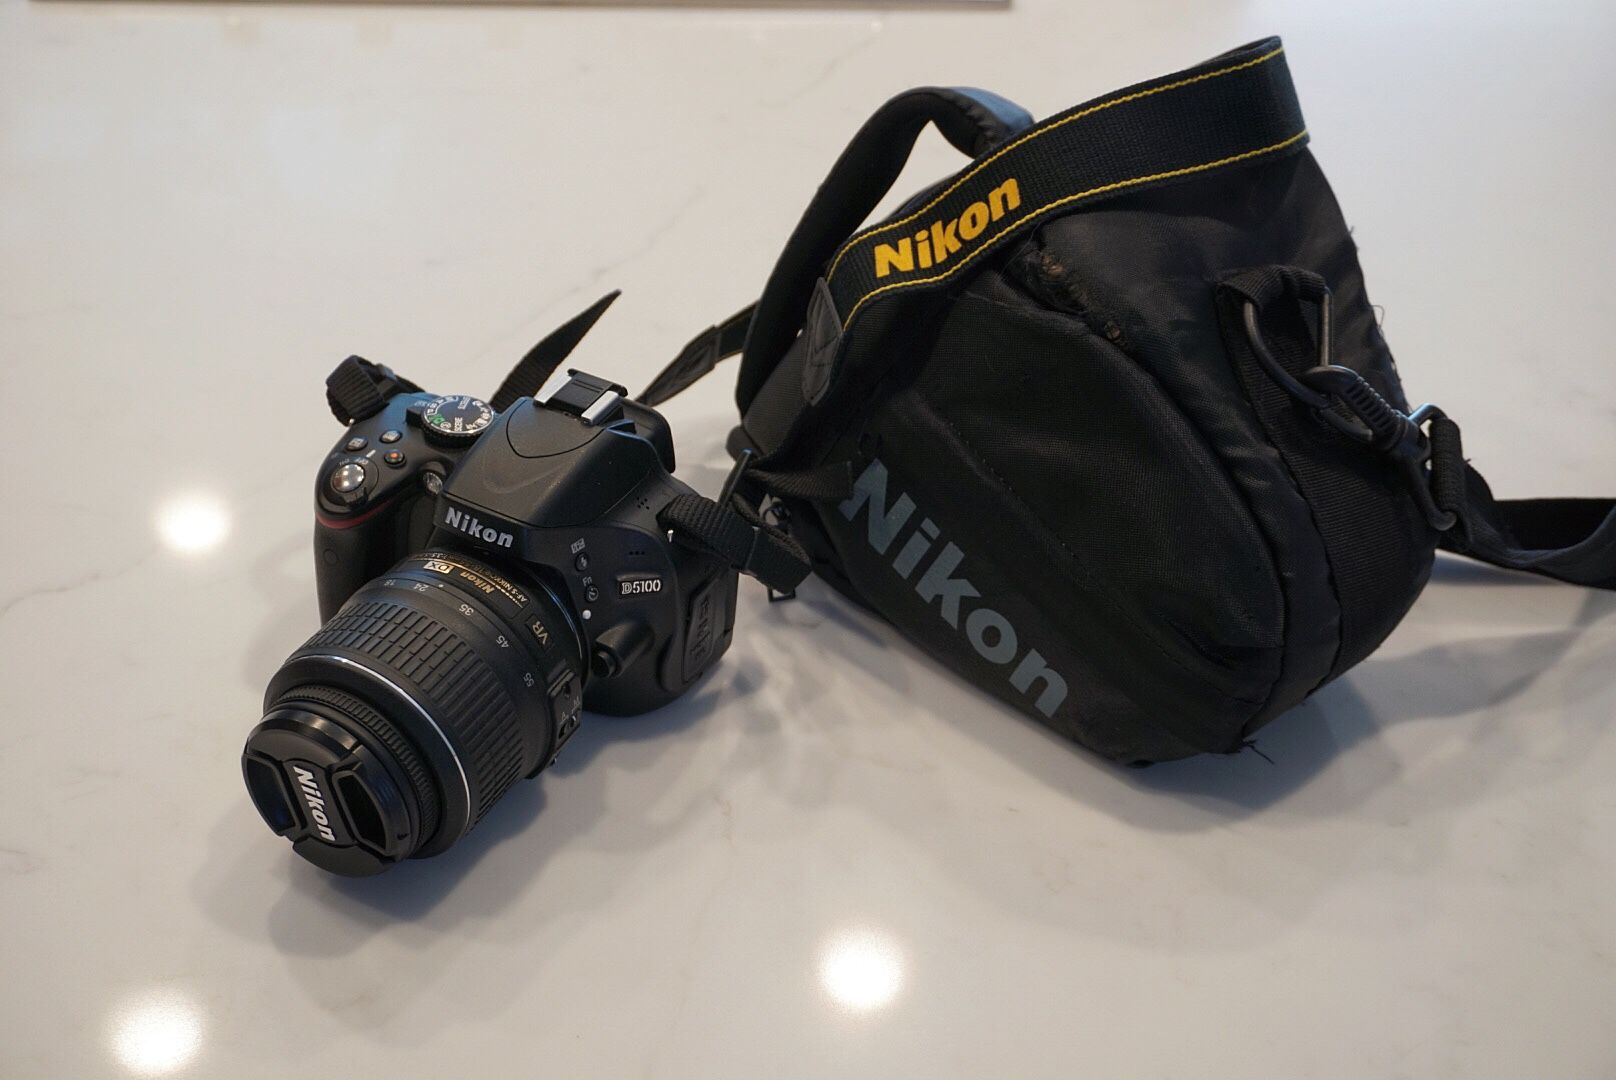 Nikon D5100 DSLR Camera